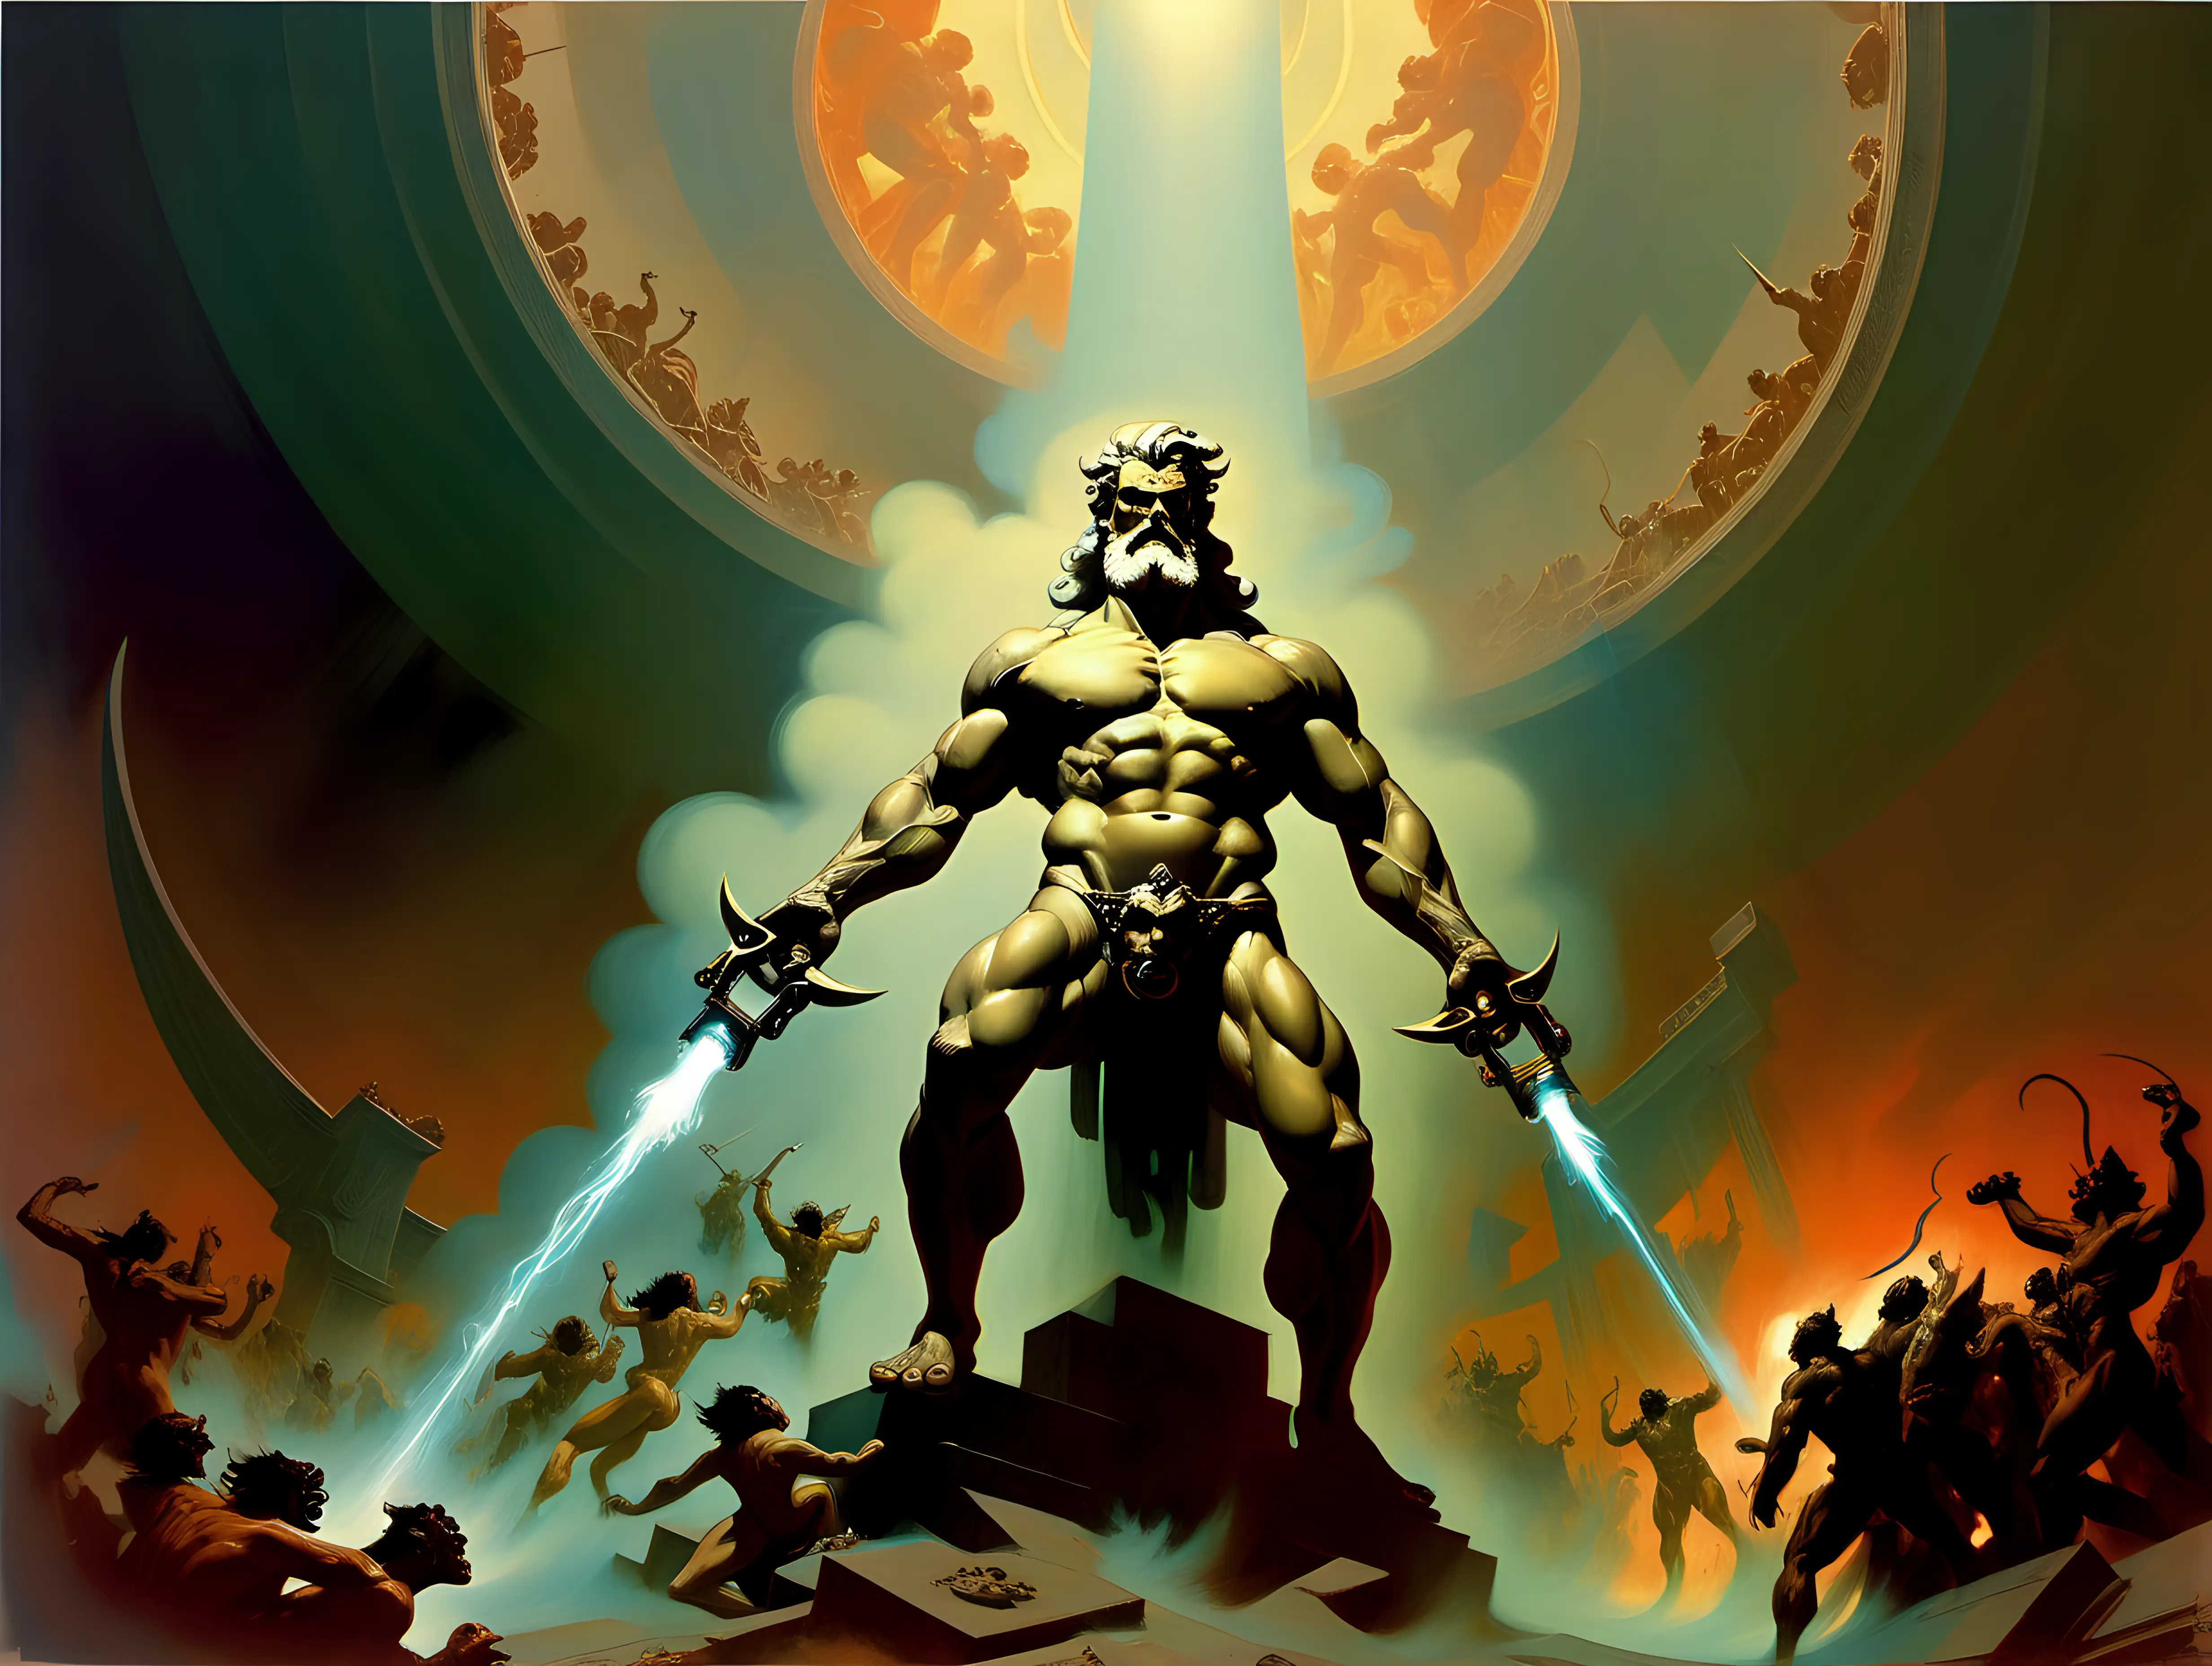 Zeus destroying  Hell in style of cyberpunk by frank frazetta